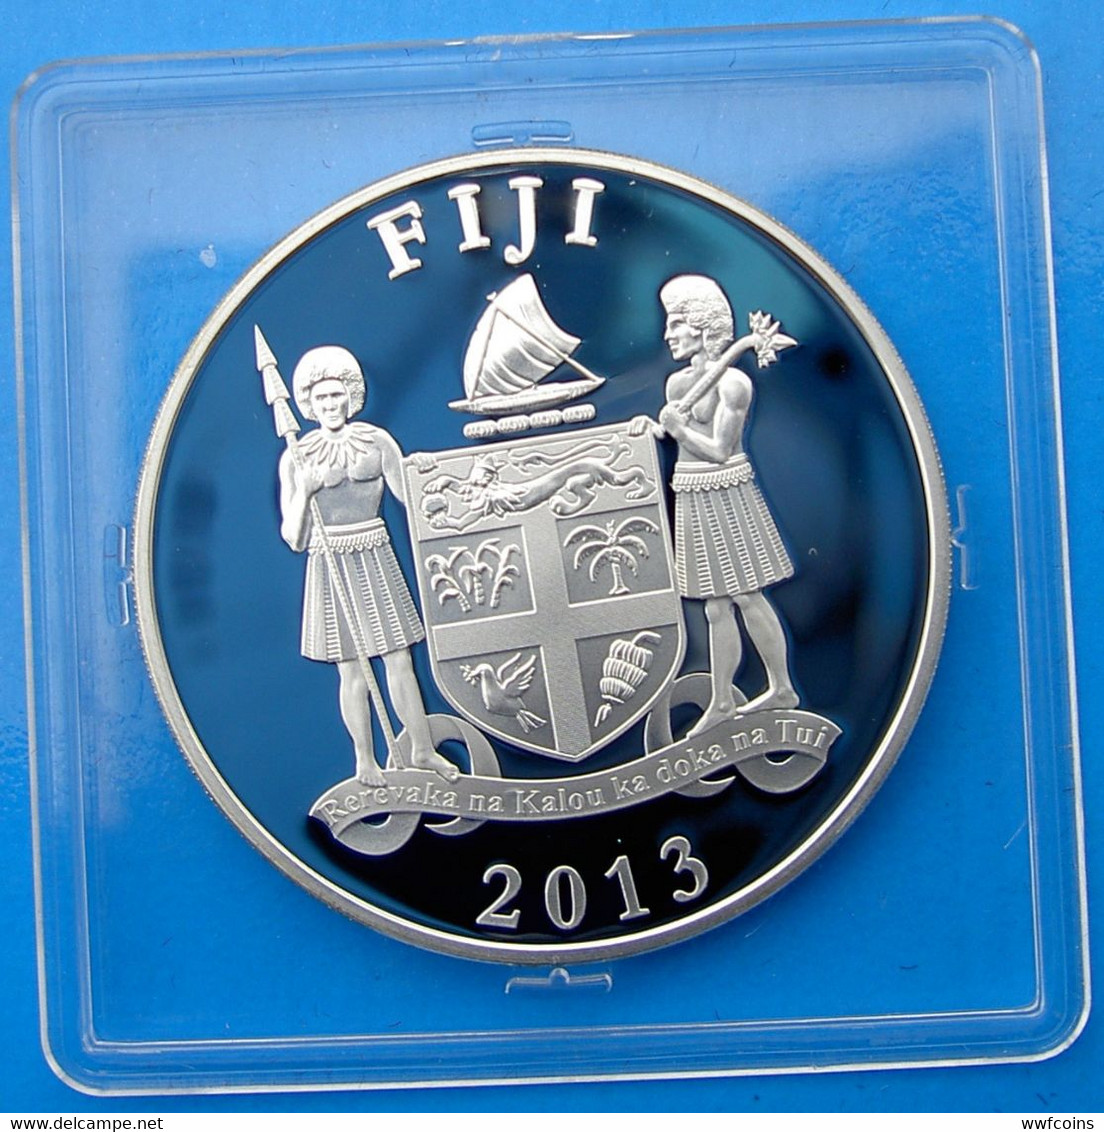 FIJI 10 $ 2013 ARGENTO OLYMPIC GAMES 2016 BRASILE RIO DE JANEIRO RUGBY PESO 20g TITOLO 0,925 CONSERVAZIONE FONDO SPECCHI - Fiji